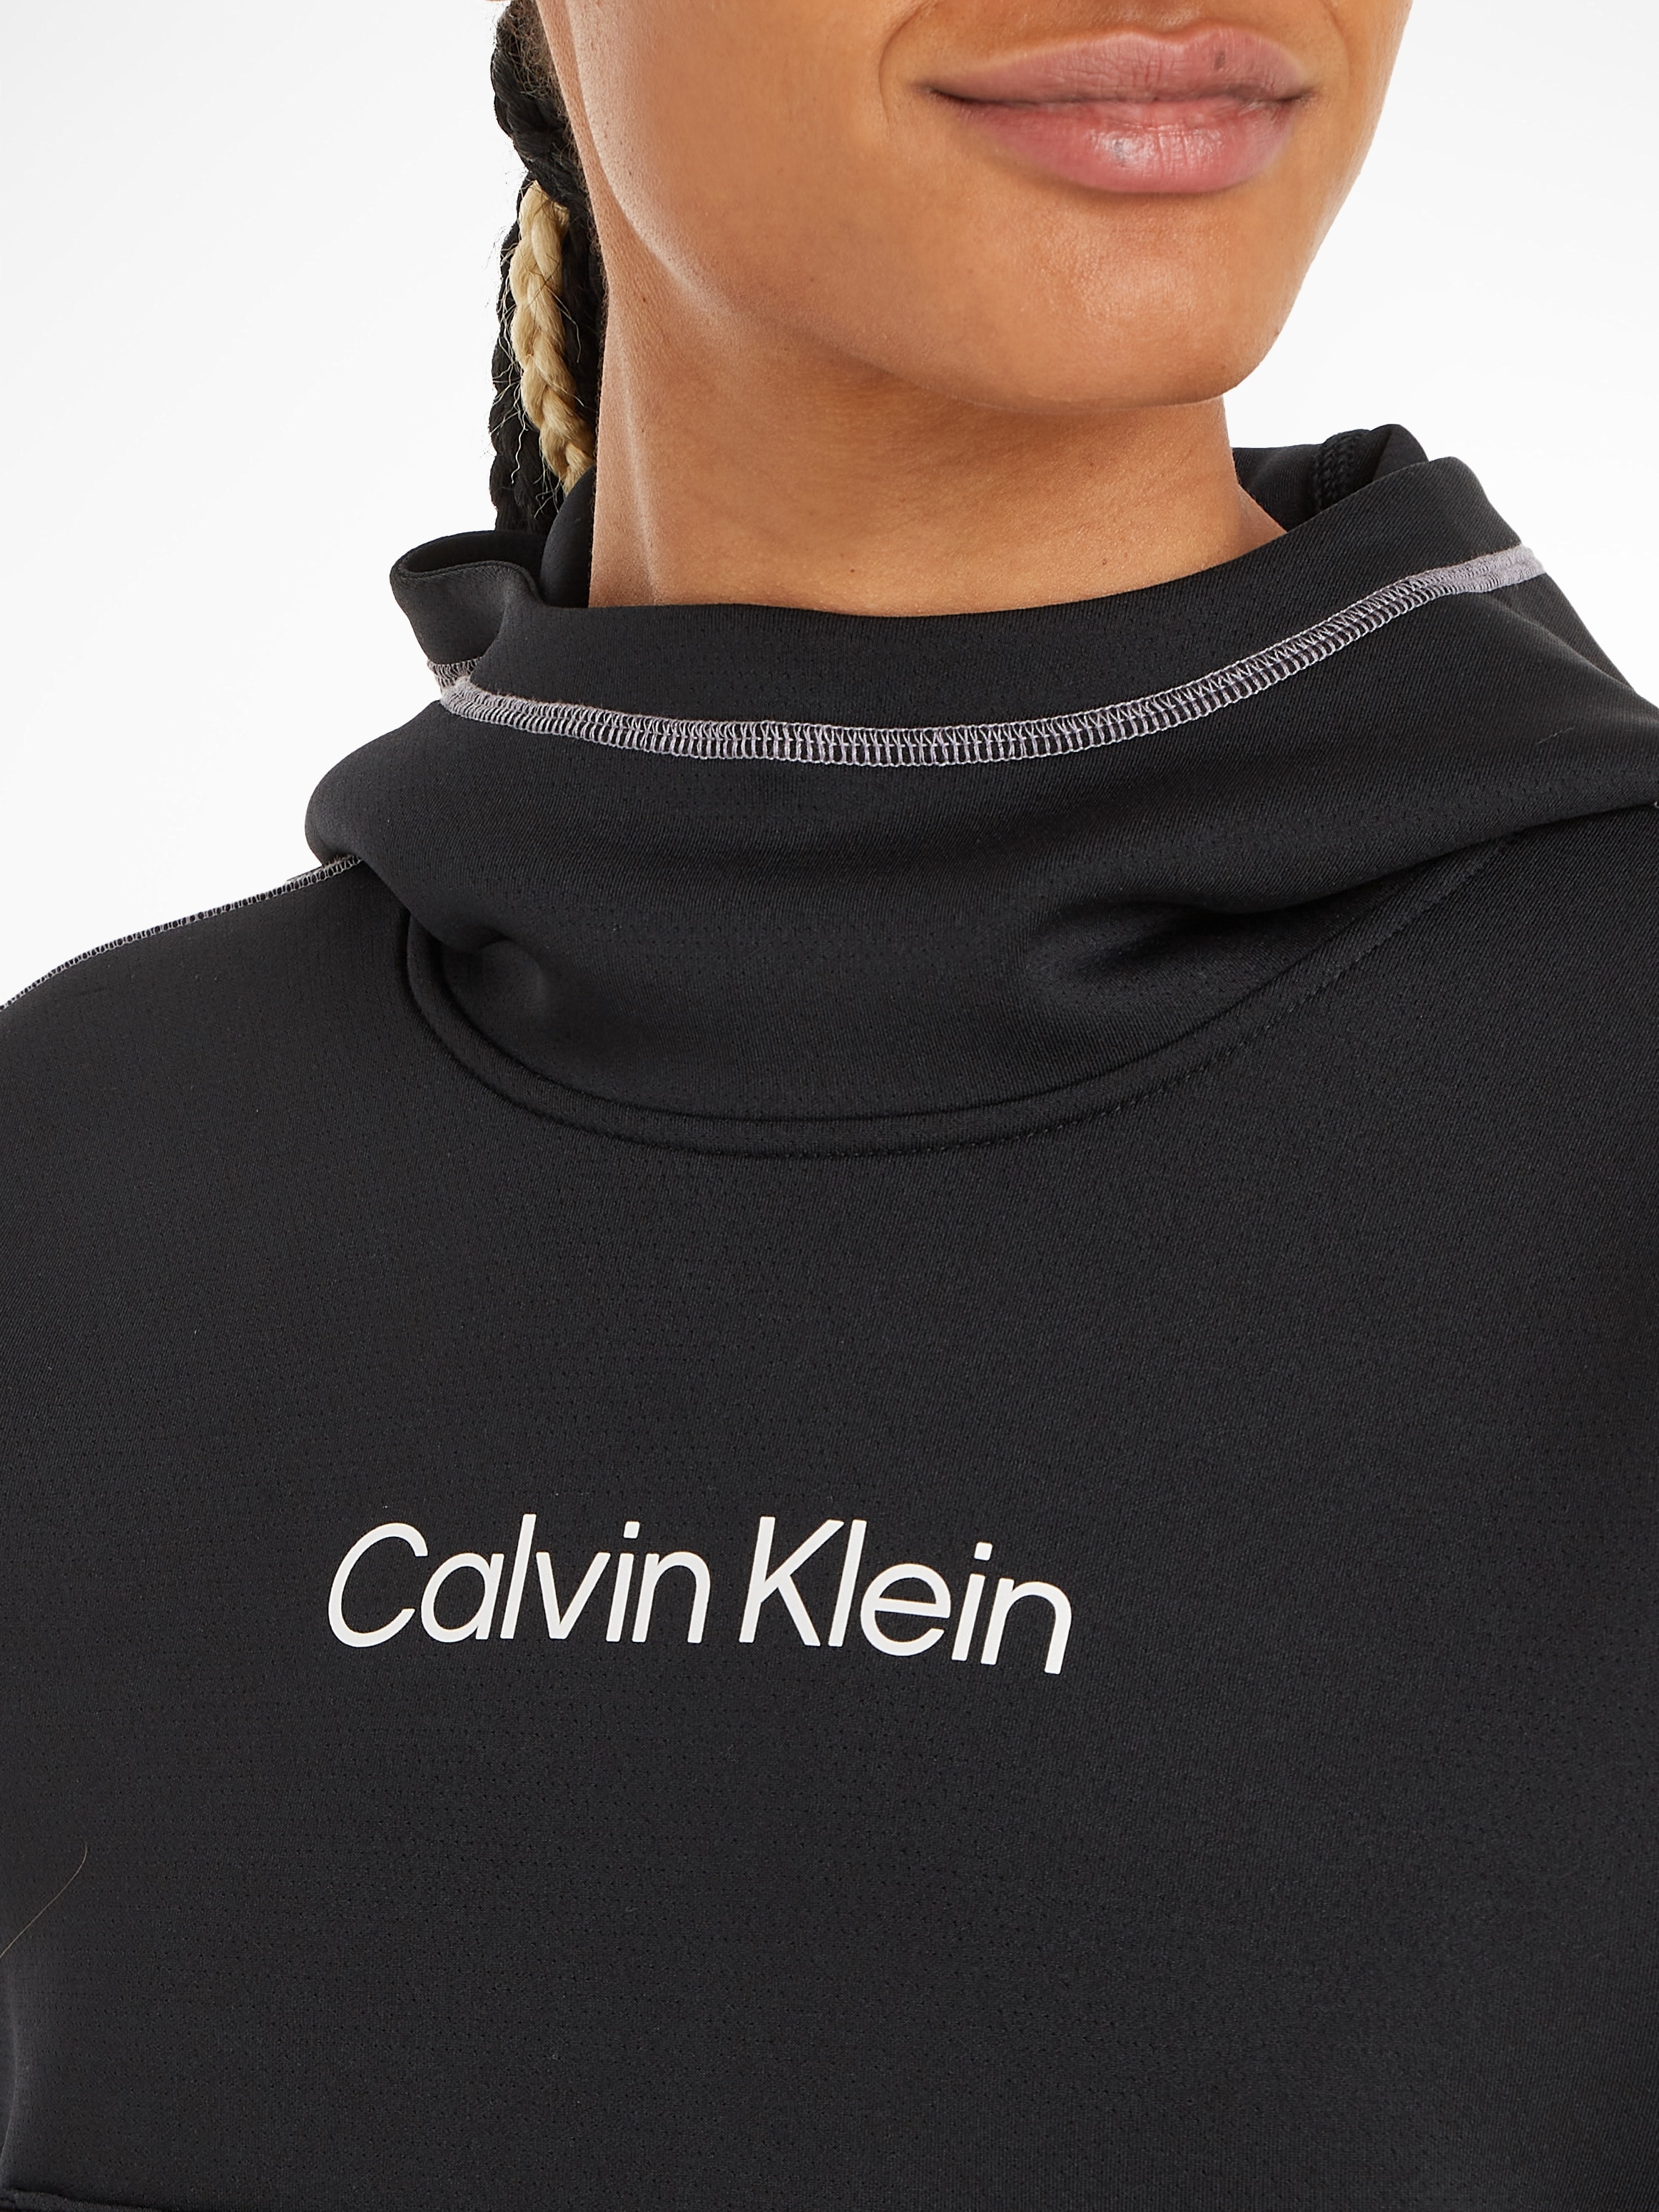 ♕ Calvin Klein Sport Trainingskapuzenpullover »PW - Hoodie«  versandkostenfrei bestellen